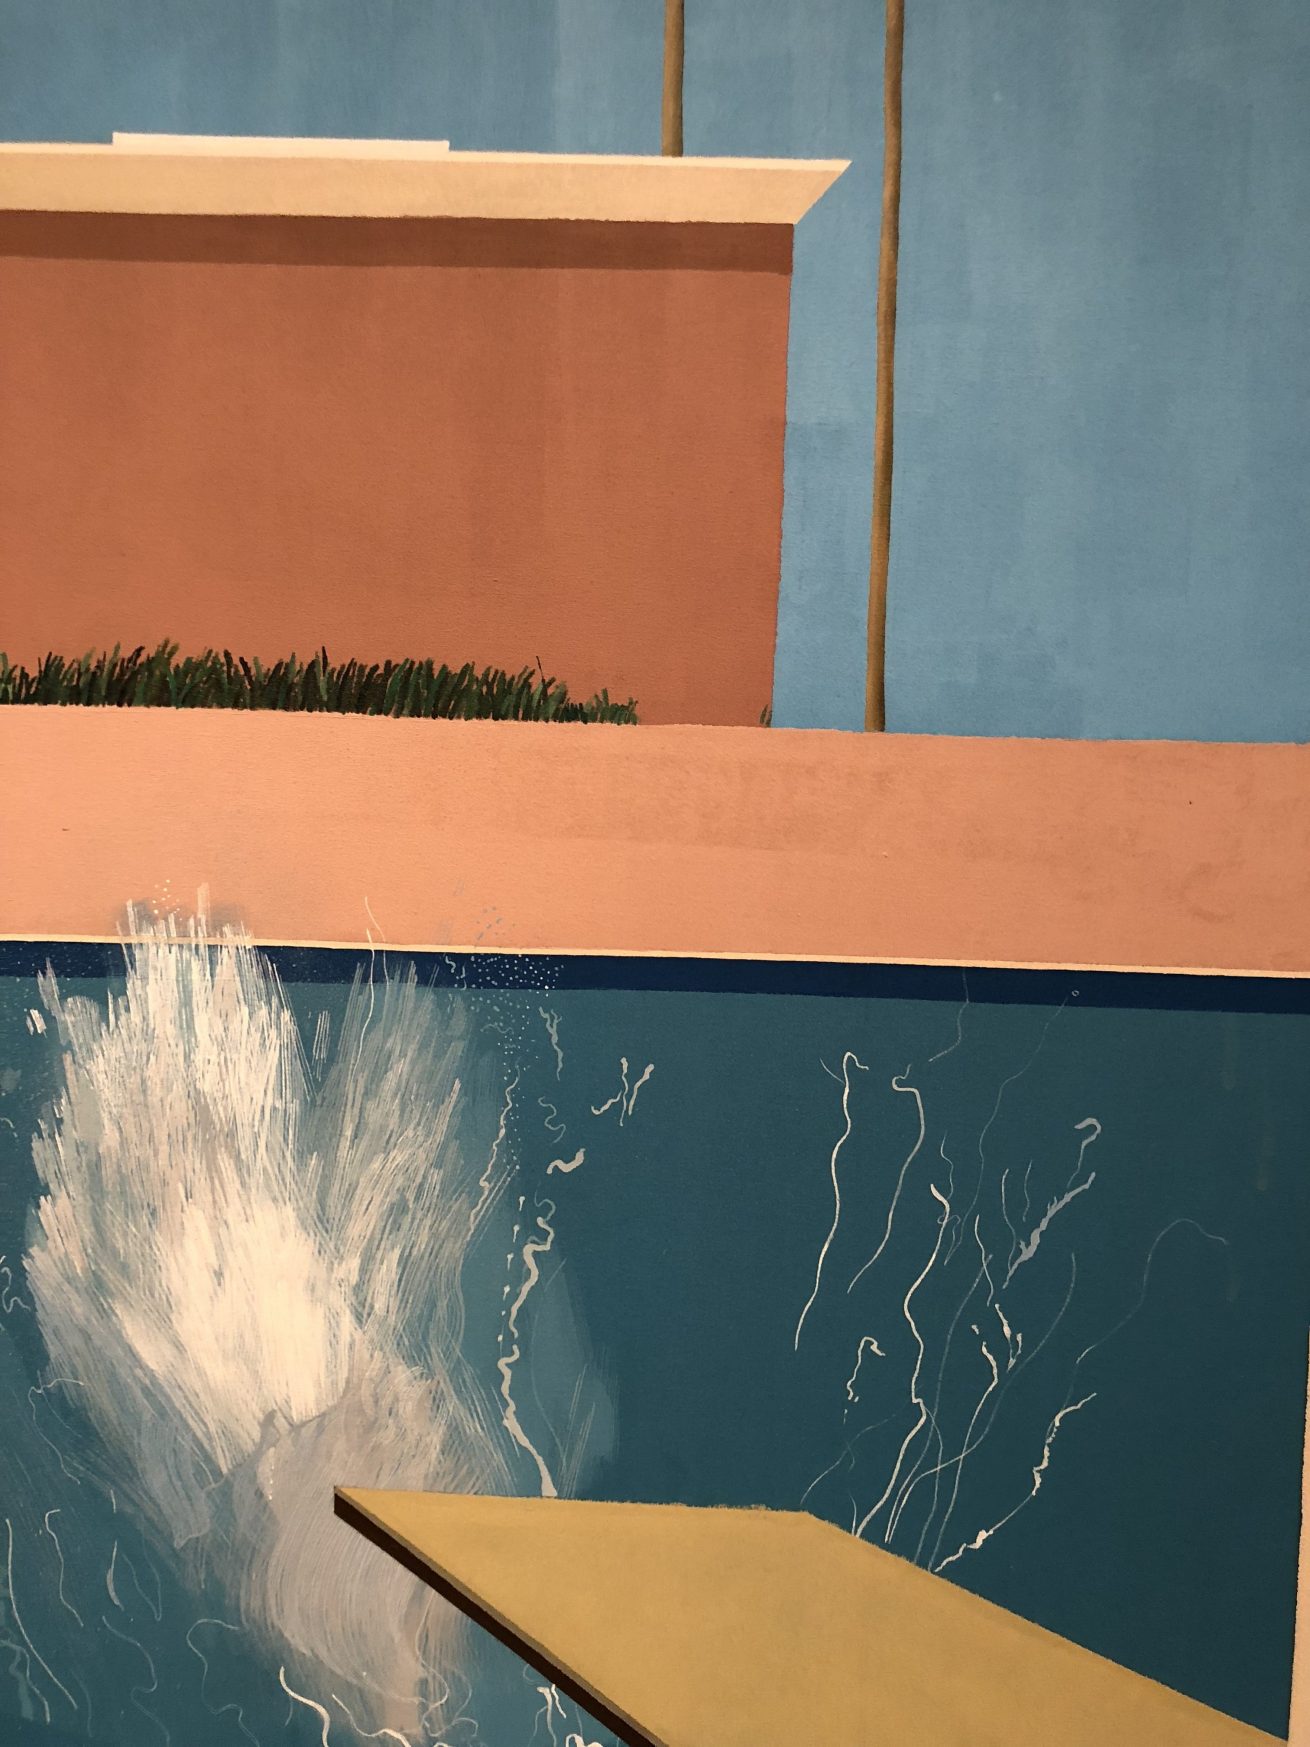 Detalle de la obra Bigger Splash, Painting after Performance, de David Hockney. Foto: Jorge Grimberg